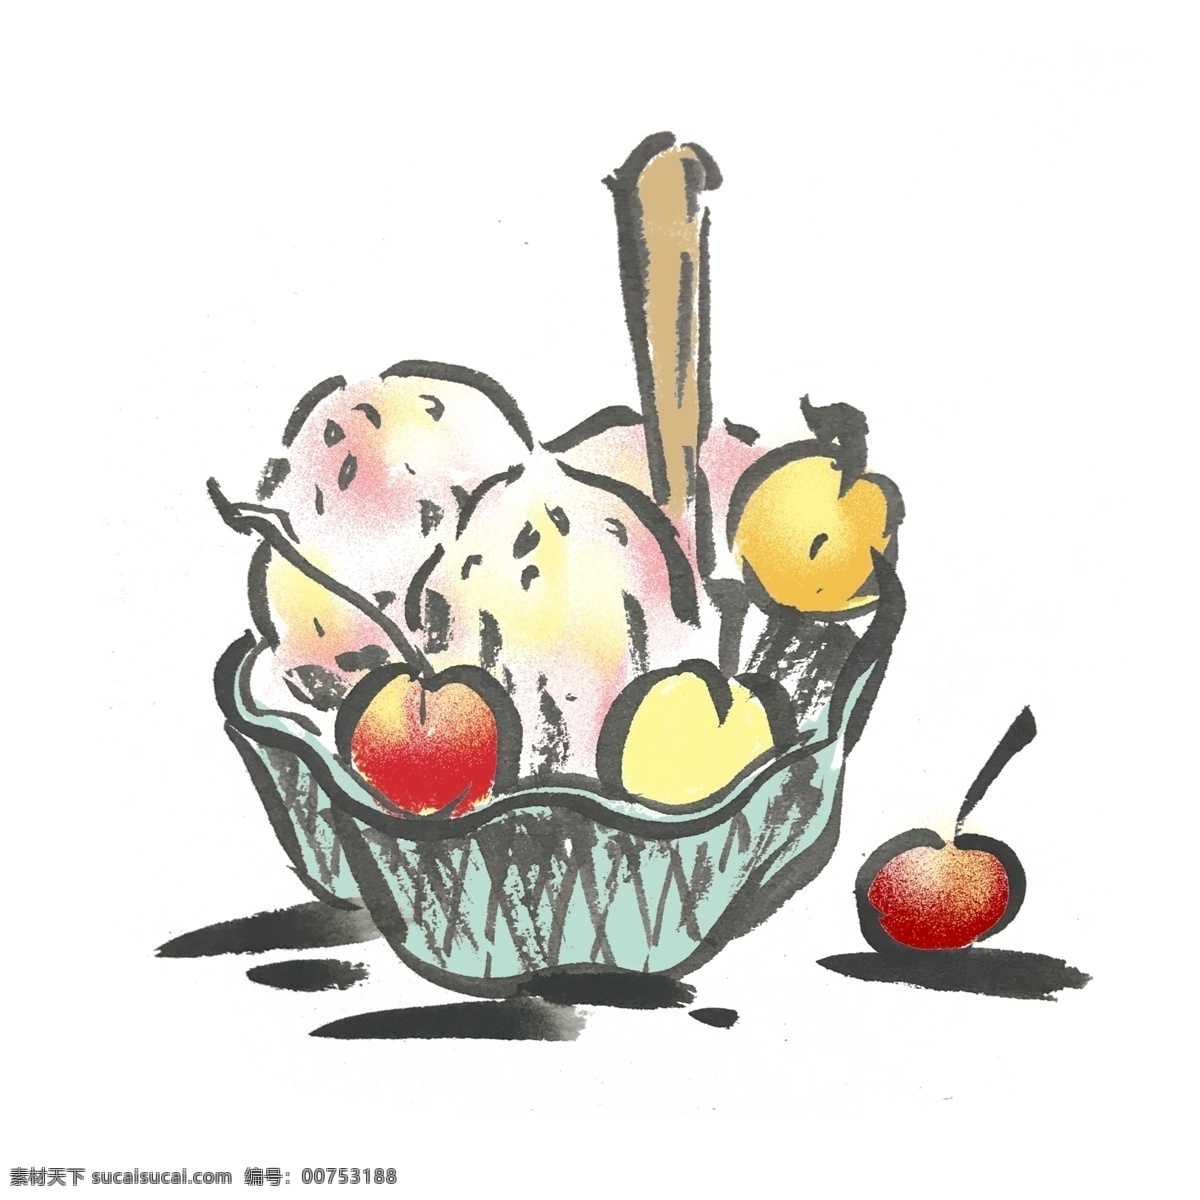 夏天 冰淇淋 水墨 风 手绘 插画 清凉 冰激凌 水果味 彩色 水墨风 中国风 童年 甜品 好吃 零度 美味 美食 蛋筒 诱人 食物